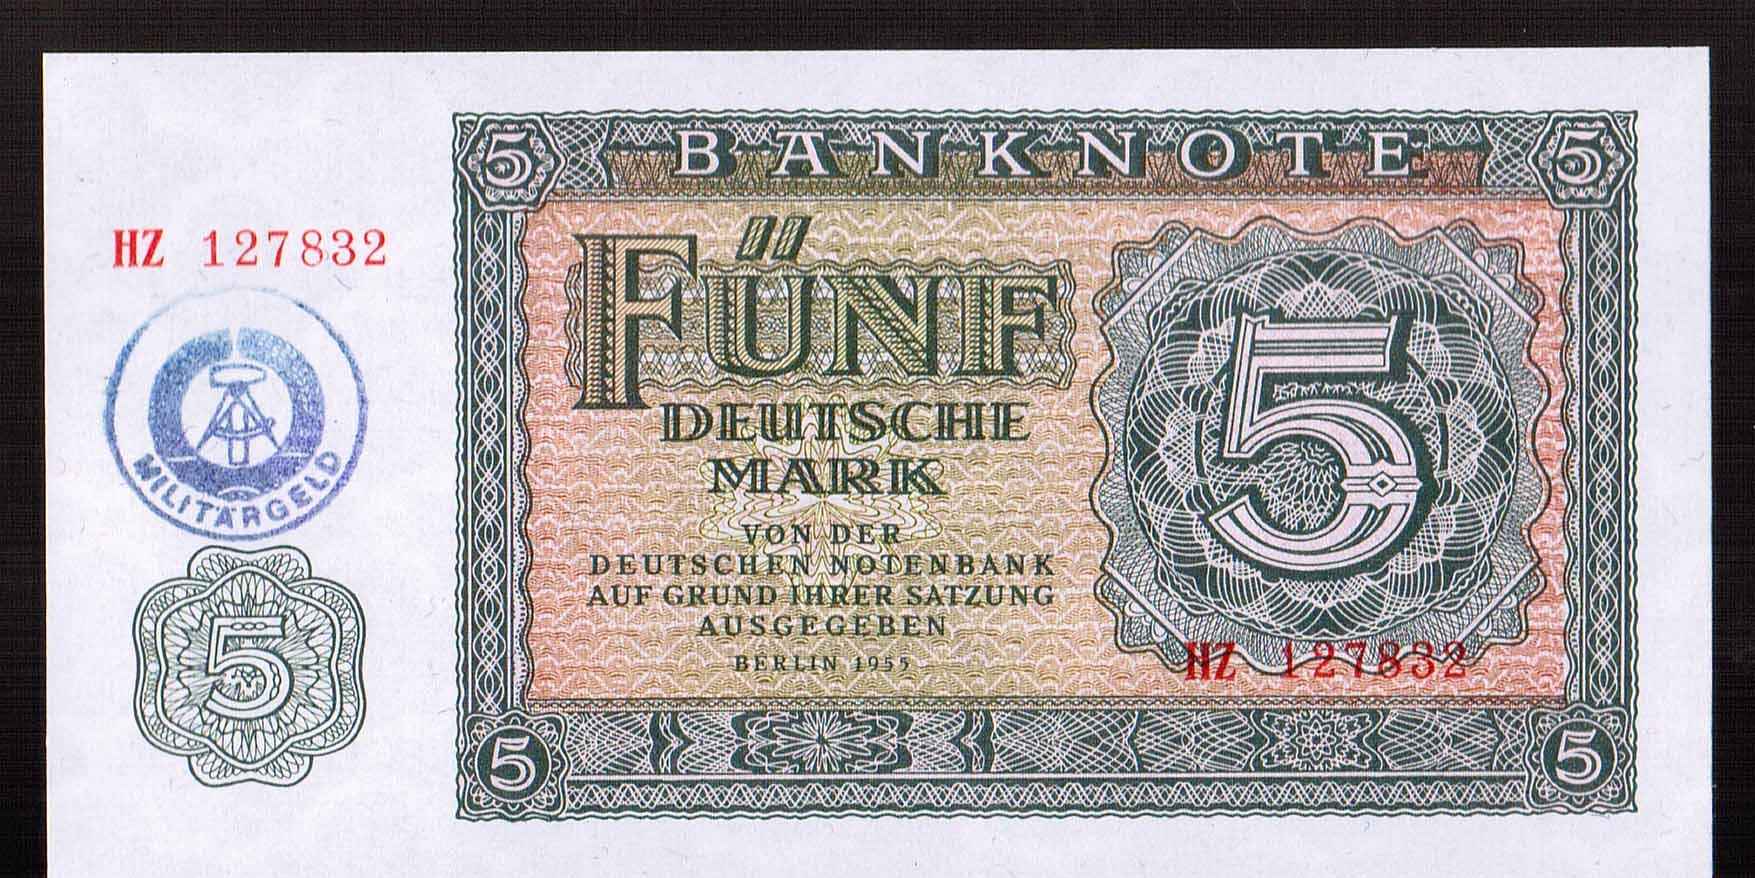 Немецкая марка в Генуэзской валютной системе при Фашистской Германии имело большую цену